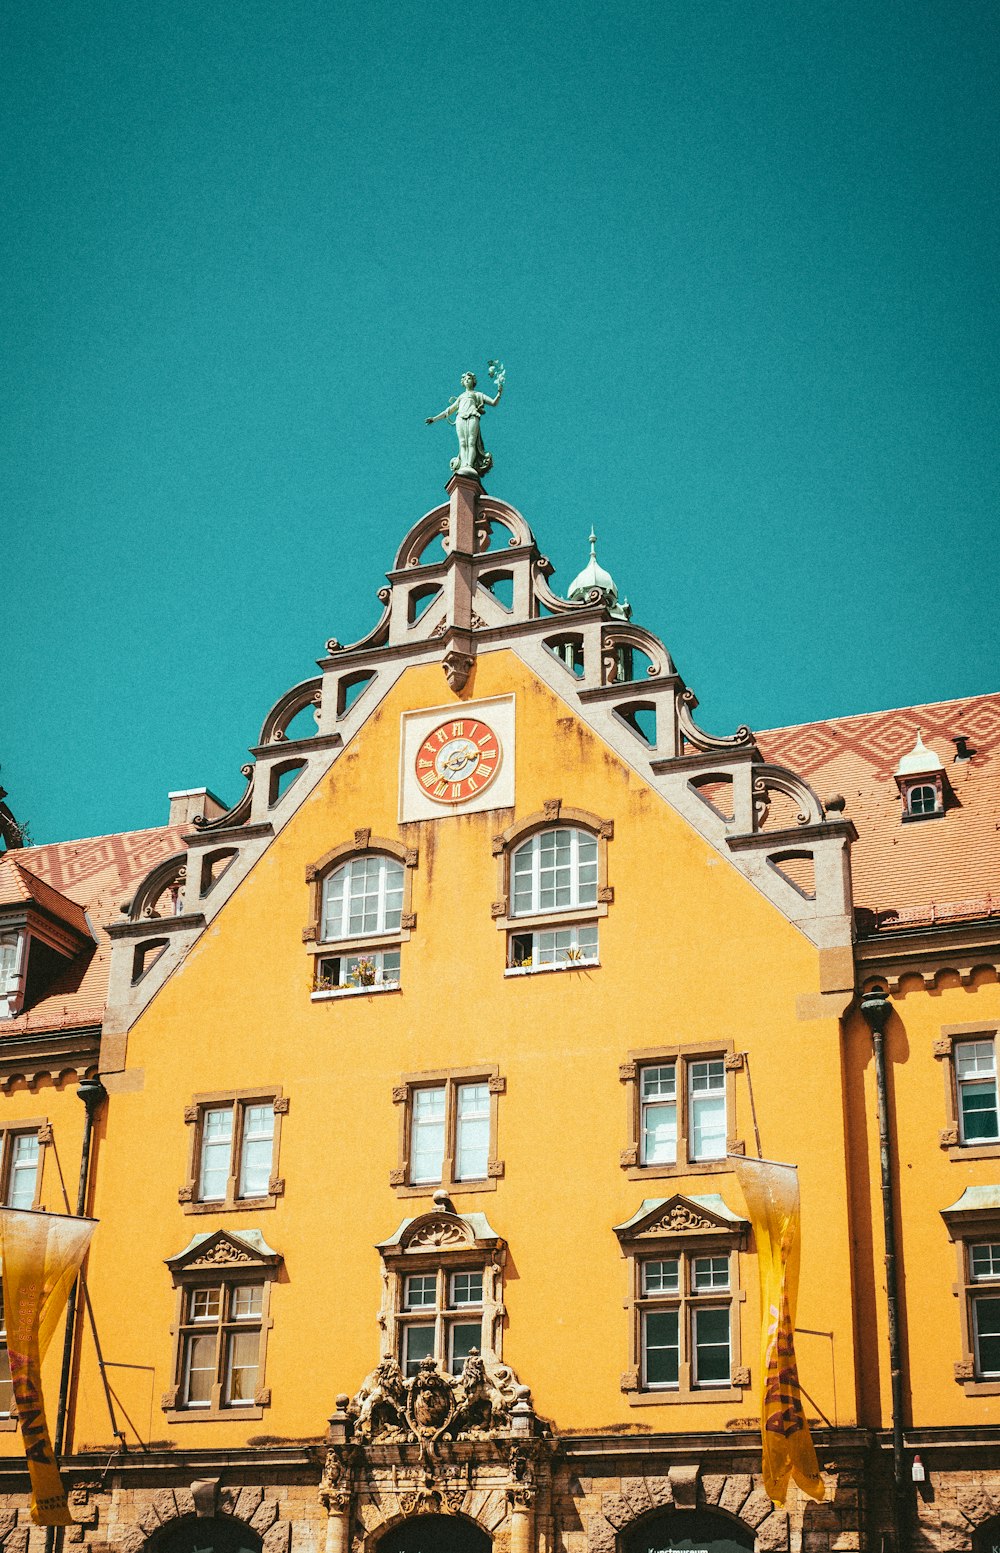 Un grand bâtiment jaune avec une horloge sur son visage